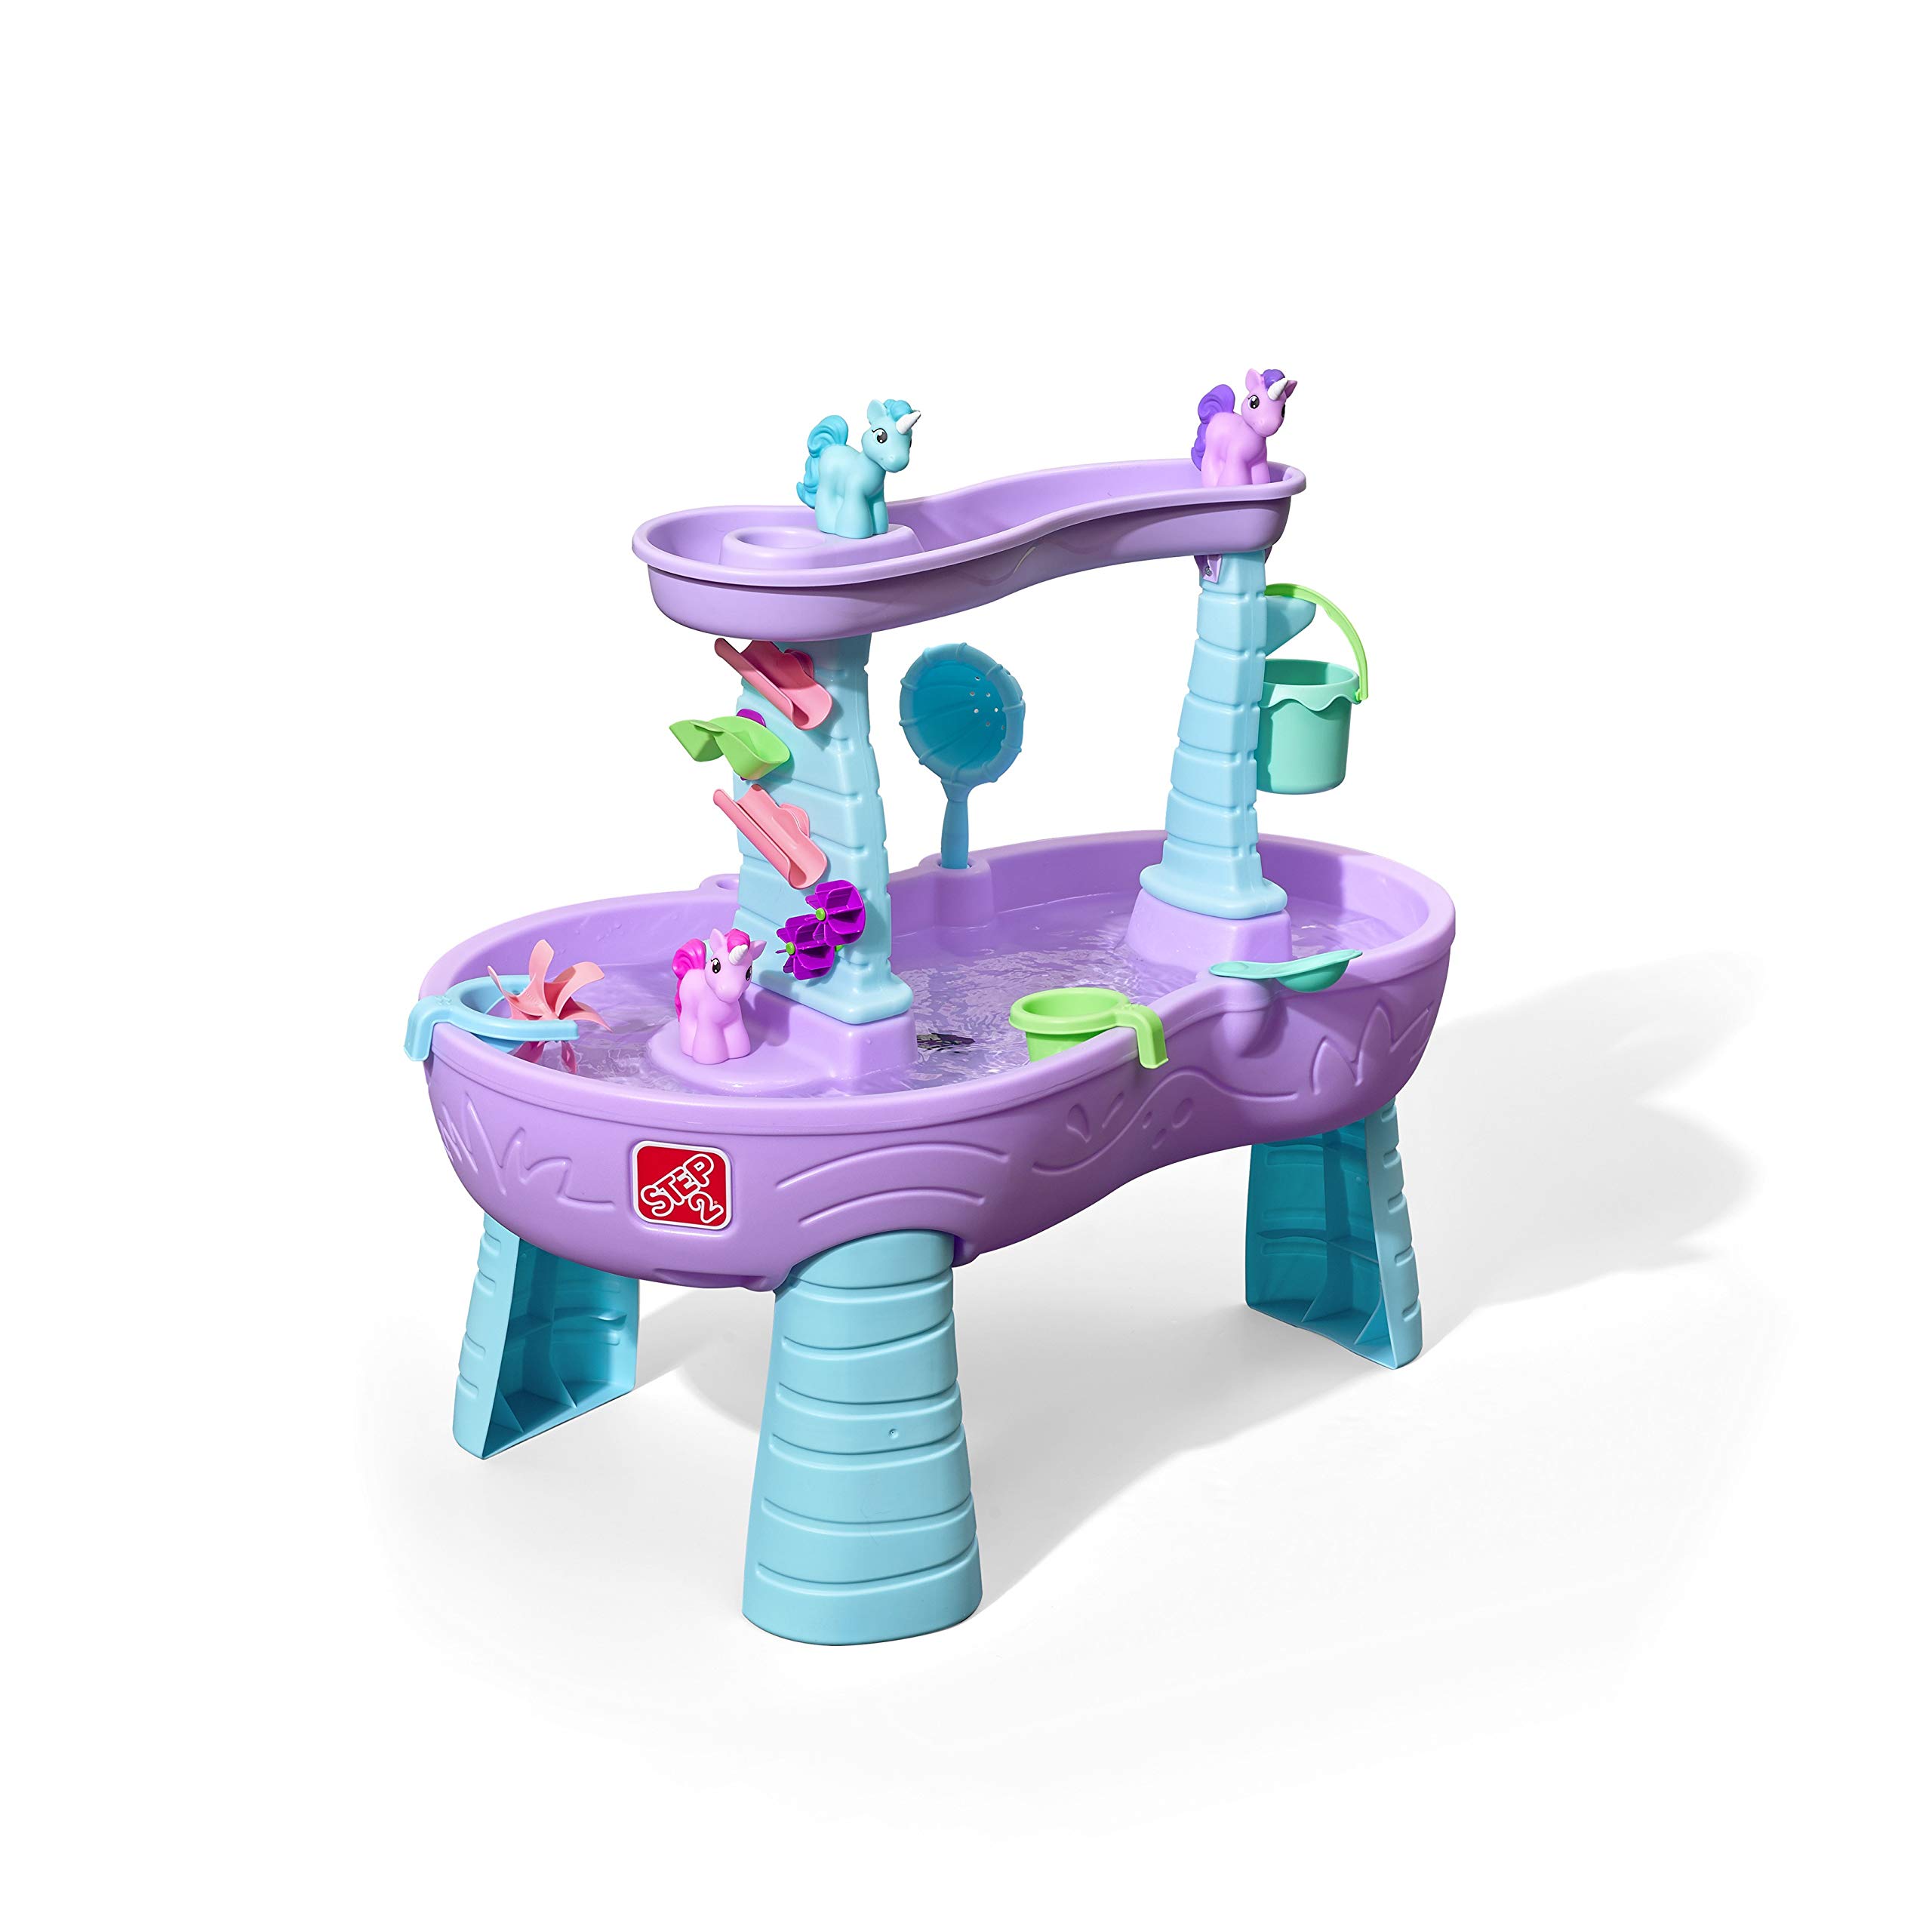 Step2 Chuveiros e unicórnios mesa d'água infantil mesa de brincar roxa com 13 peças conjunto de acessórios de unicórnio